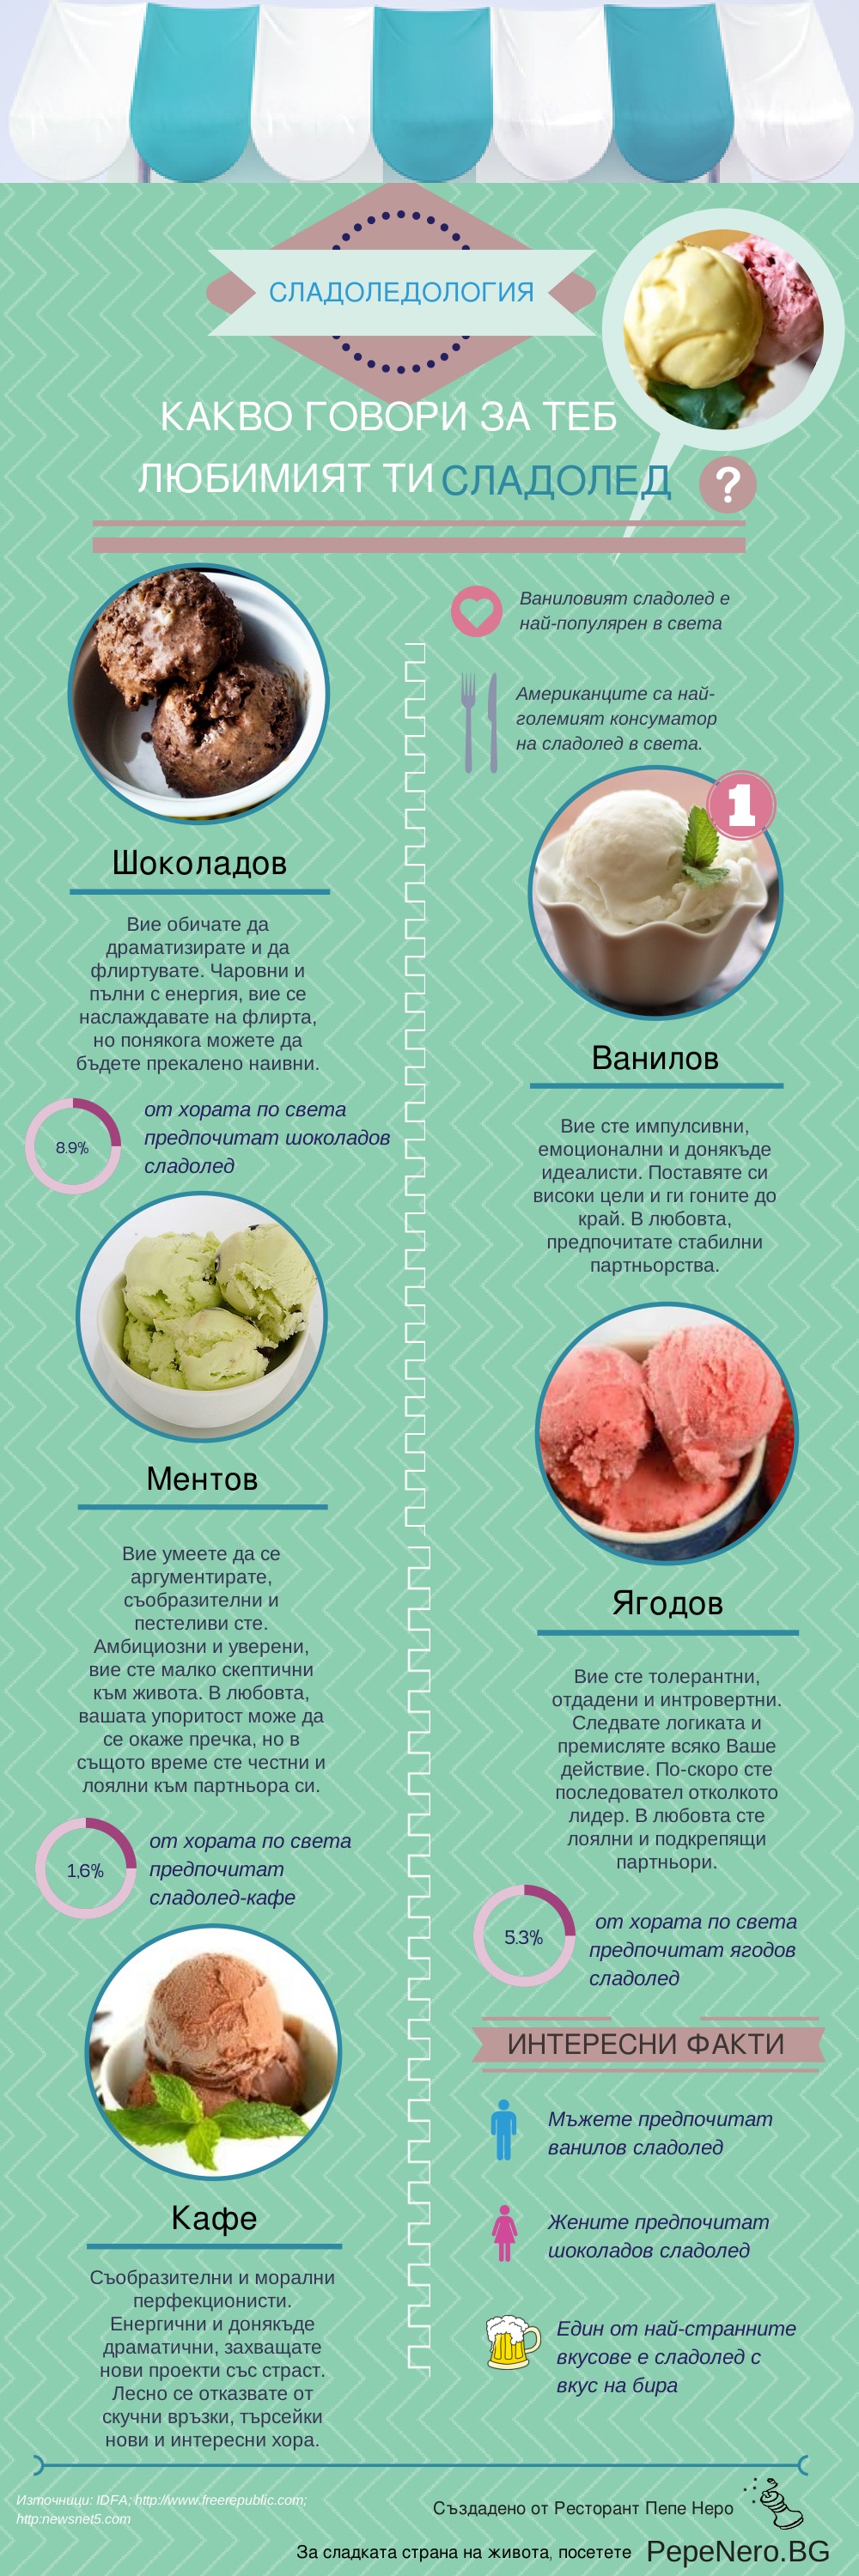 За връзката между сладоледа и твоя характер (инфографика)